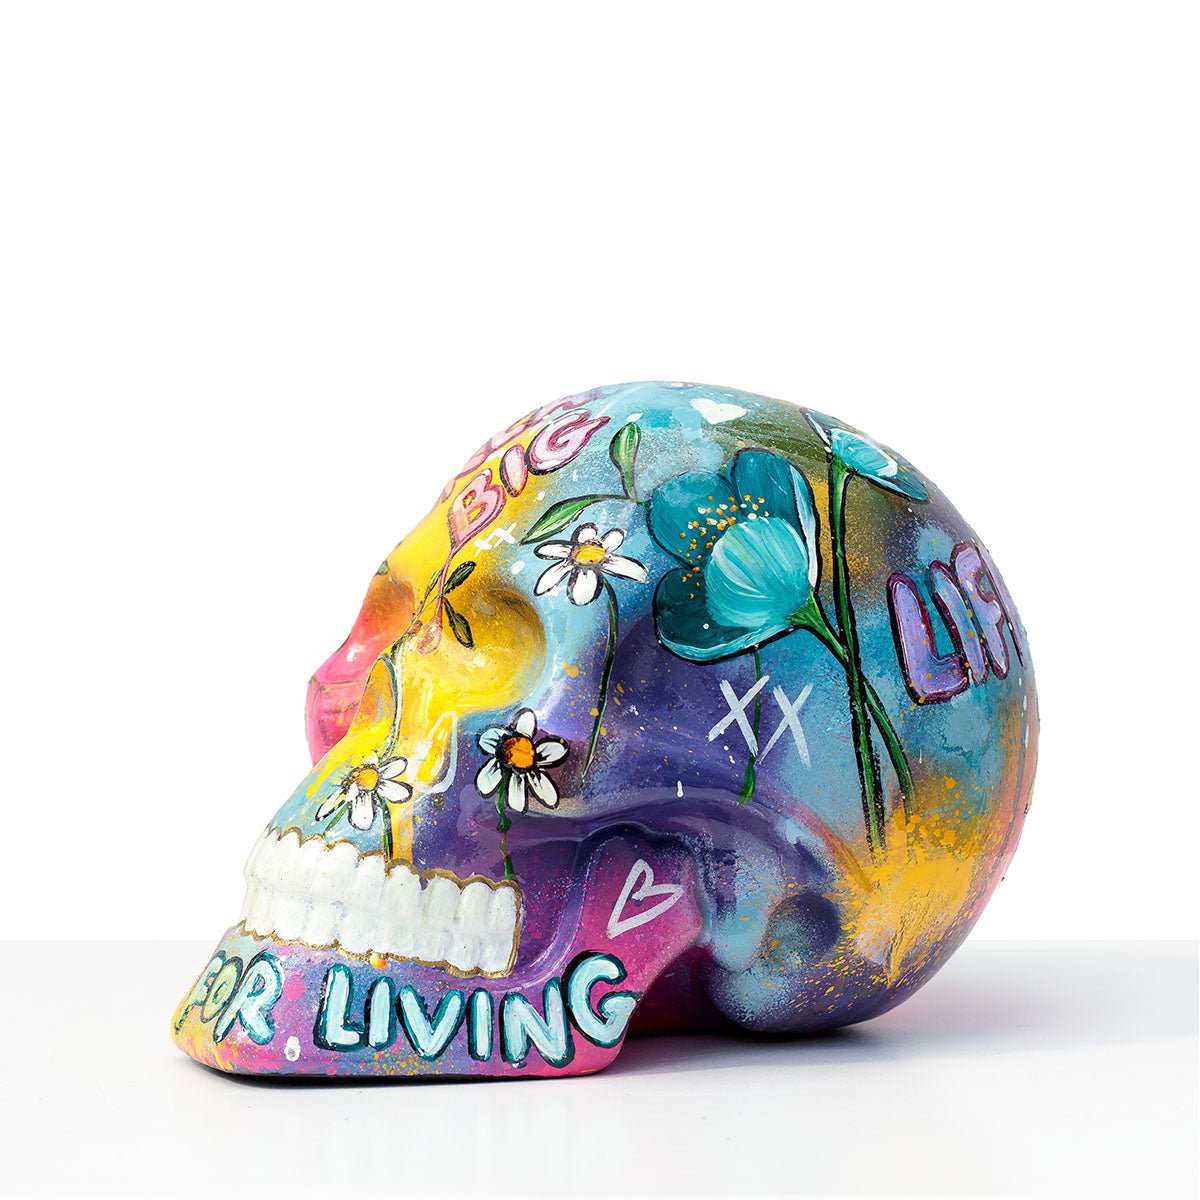 Life Is For Living - Original Sculpture Becky Smith Original